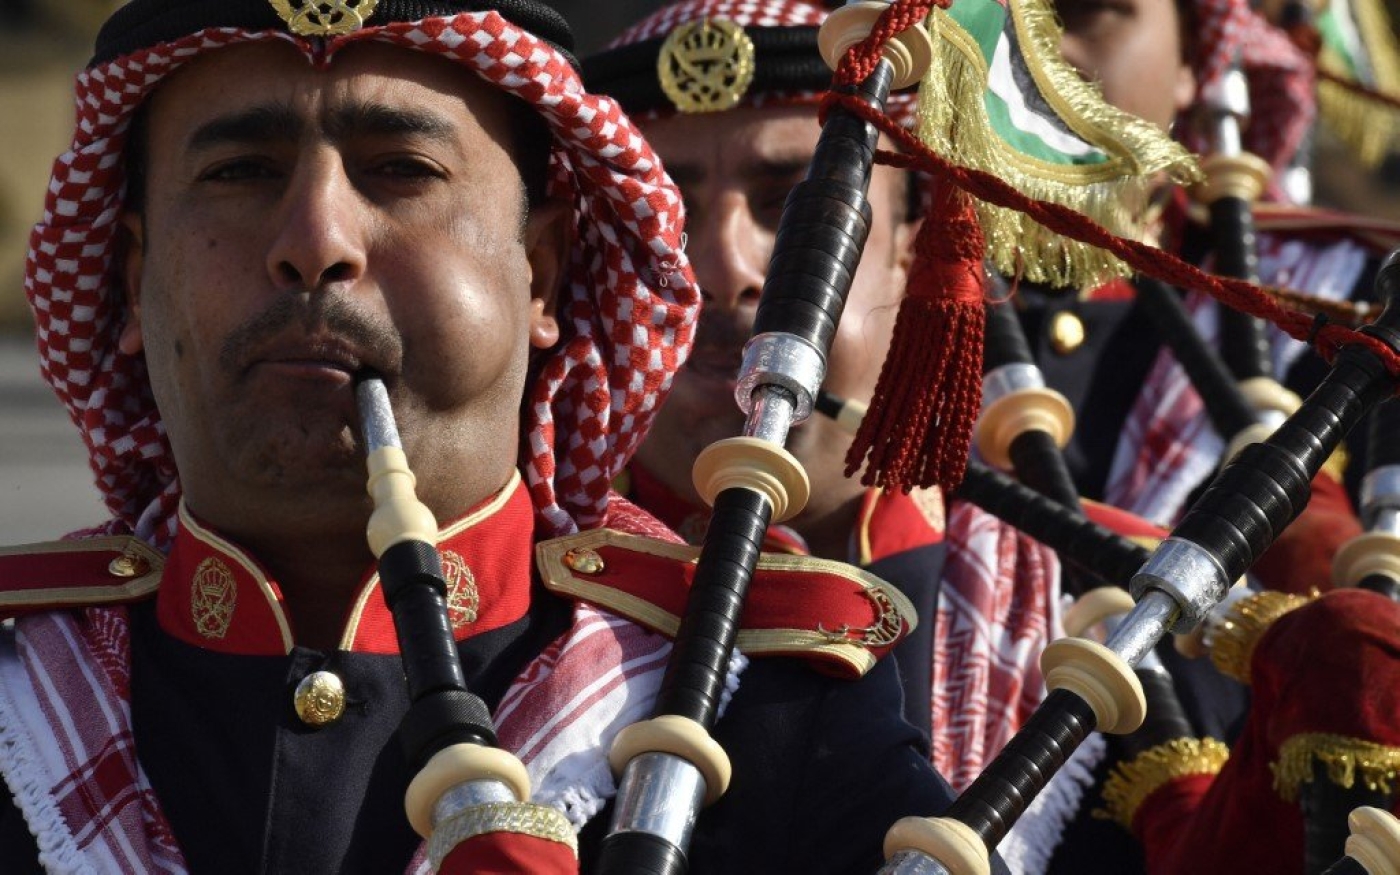 Des joueurs de cornemuse faisant partie d’un orchestre militaire jordanien répètent avant une cérémonie à l’aéroport de Marka à Amman (AFP)